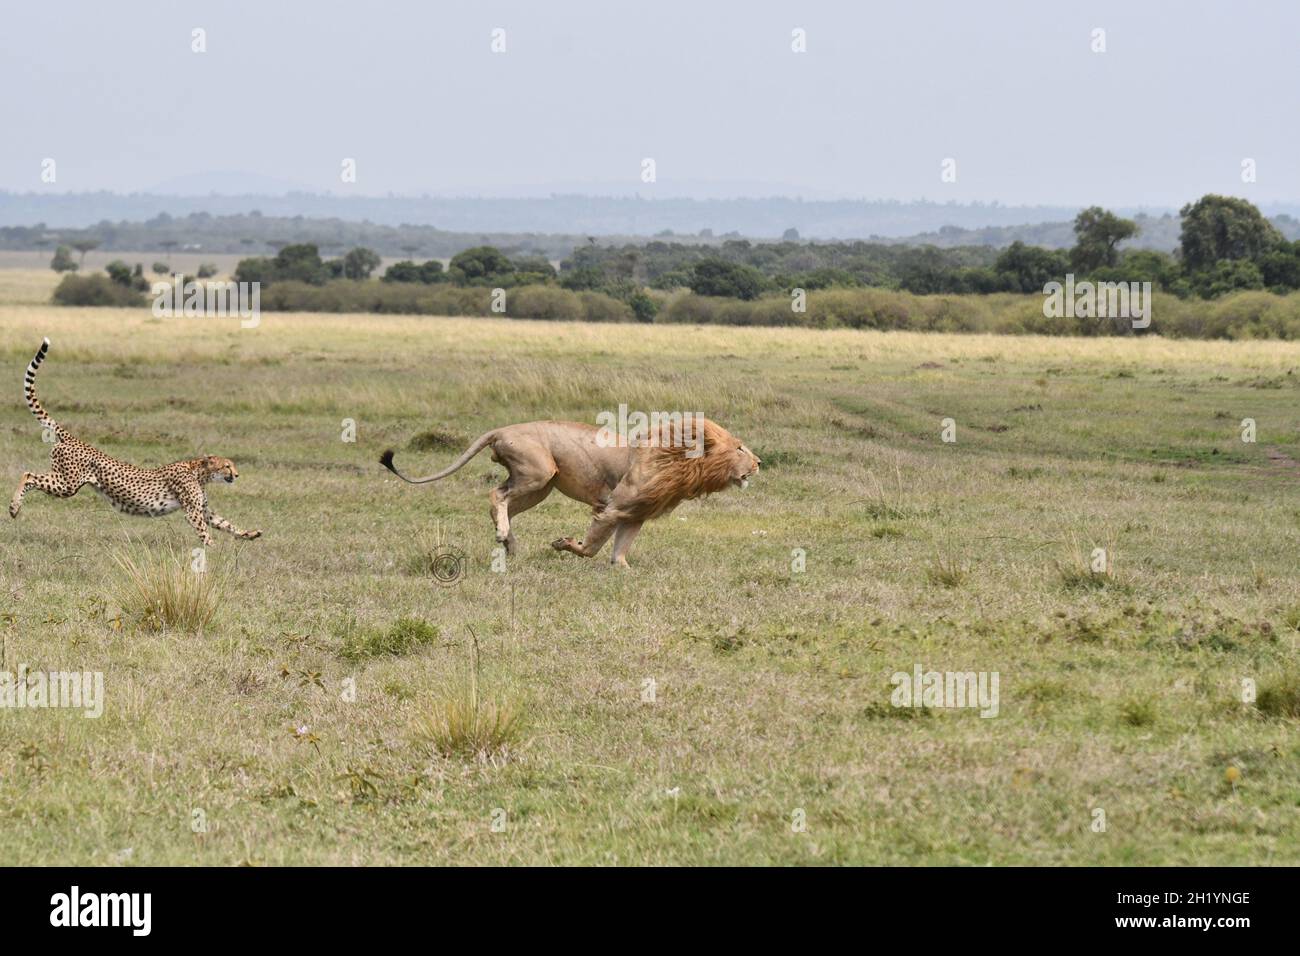 A cheetah chase usually lasts less than a minute and covers just 200-300 metres. MAASAI MARA NATIONAL RESERVE, KENYA: THIS BRAVE cheetah mum was captu Stock Photo